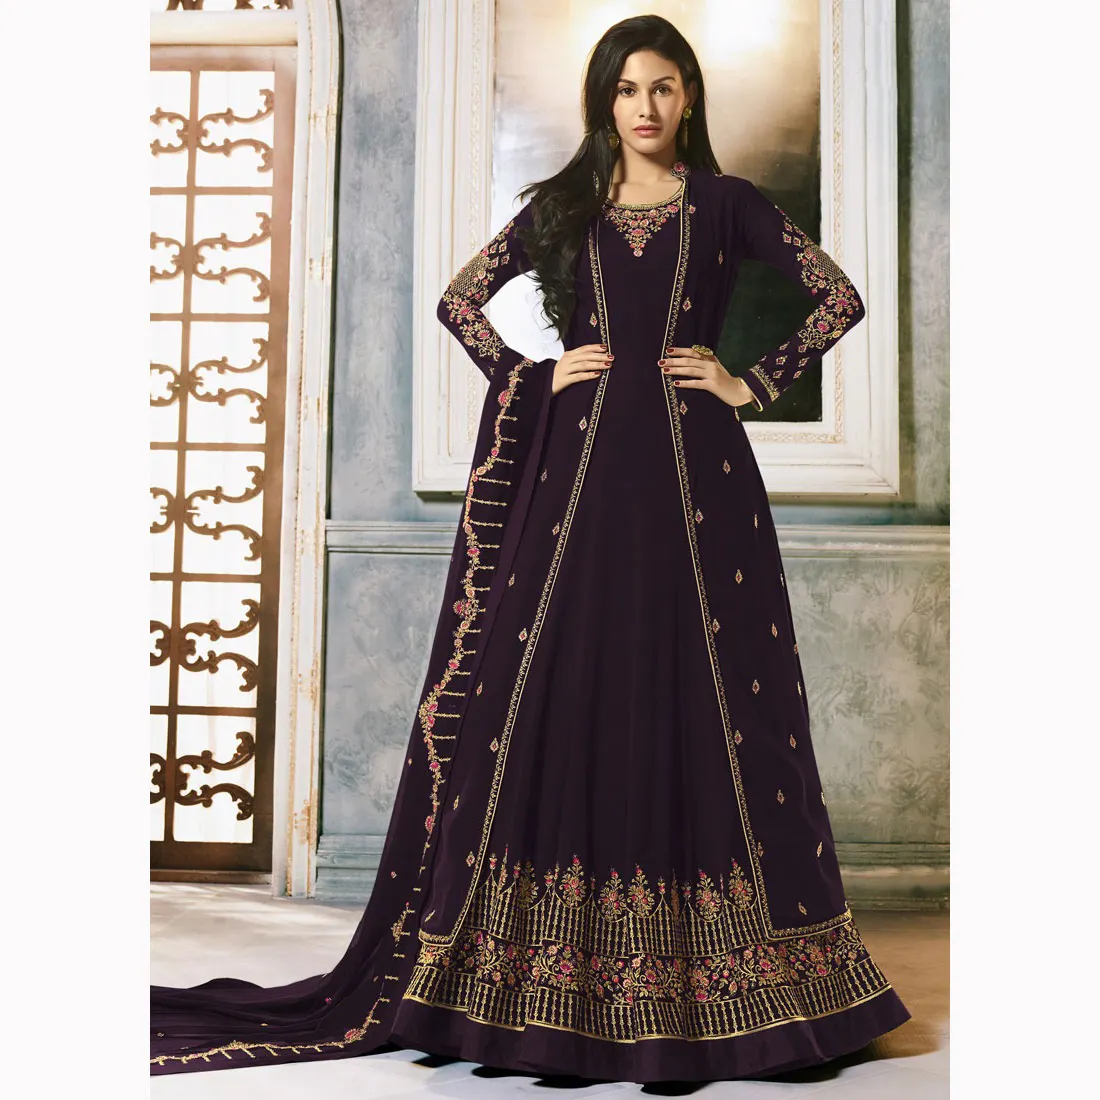 Super Luxus ungestickte Kleider Original Pakistan Marke von hochwertigen Chiffon stilvolle und schöne Hochzeits kleidung